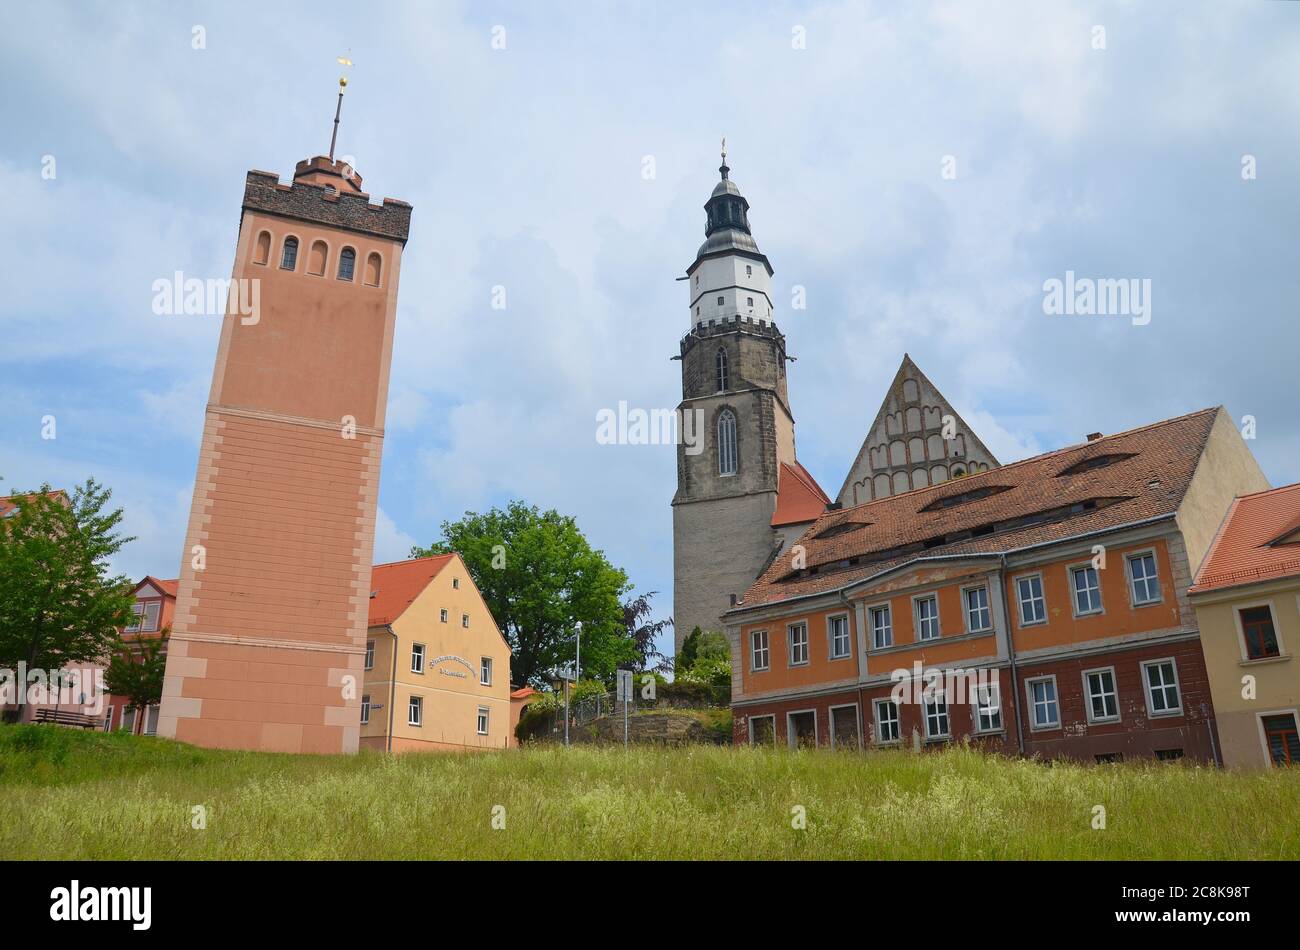 Die Lessing-Stadt Kamenz in Sachsen, Oberlausitz, Deutschland, im sorbischen Siedlungsgebiet, die Stadtkirche Stock Photo